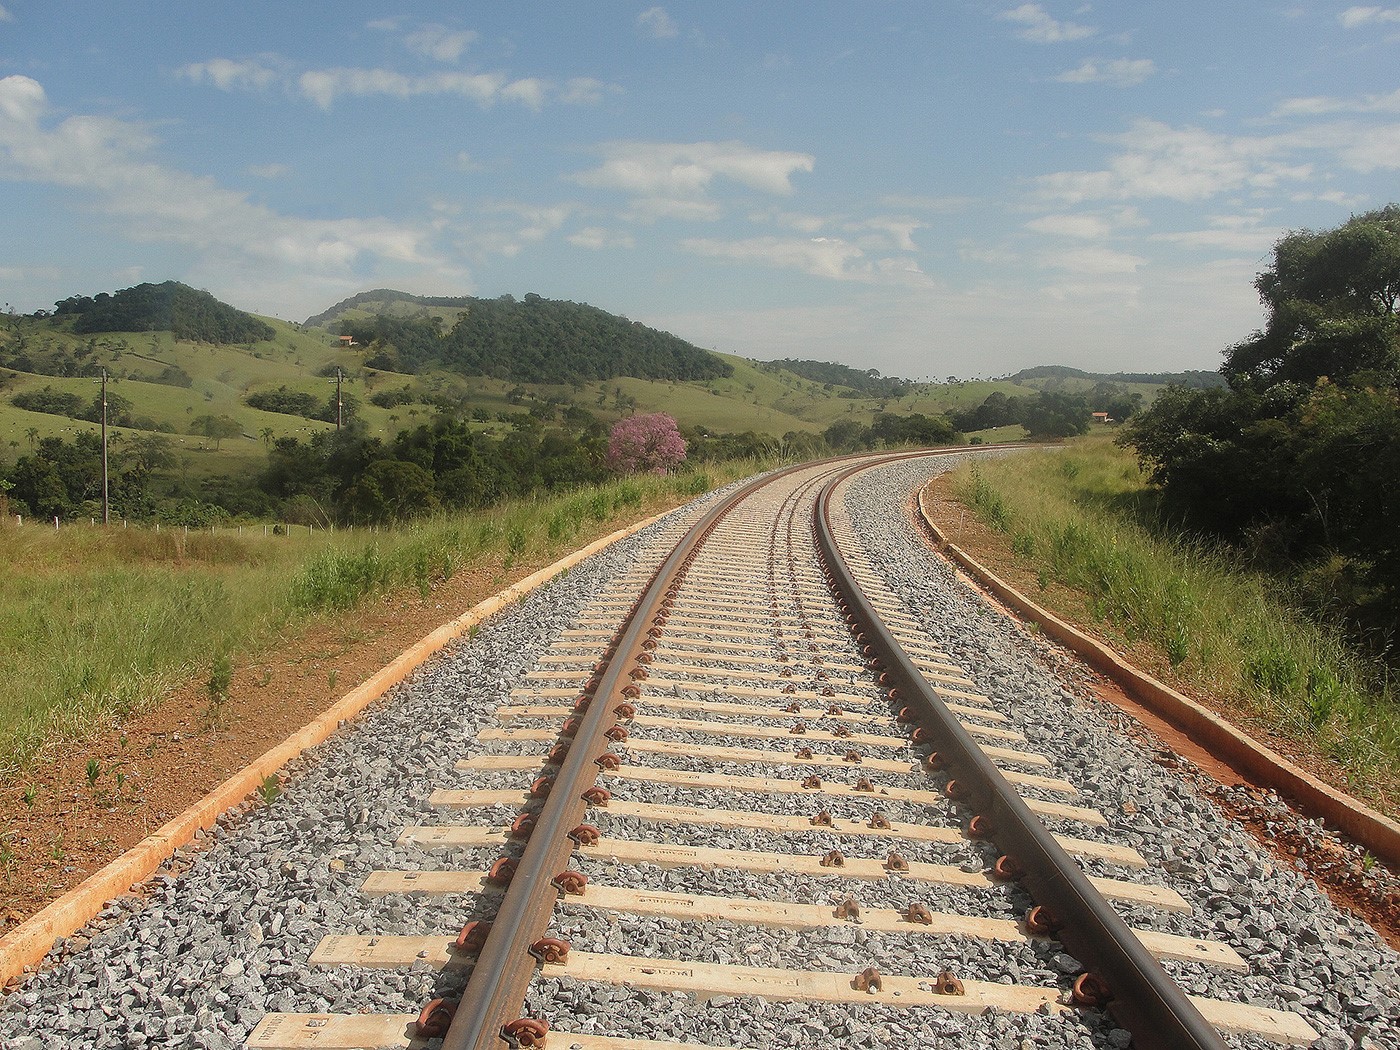 Ferrovia está em fase de estudos de viabilidade técnica e econômica